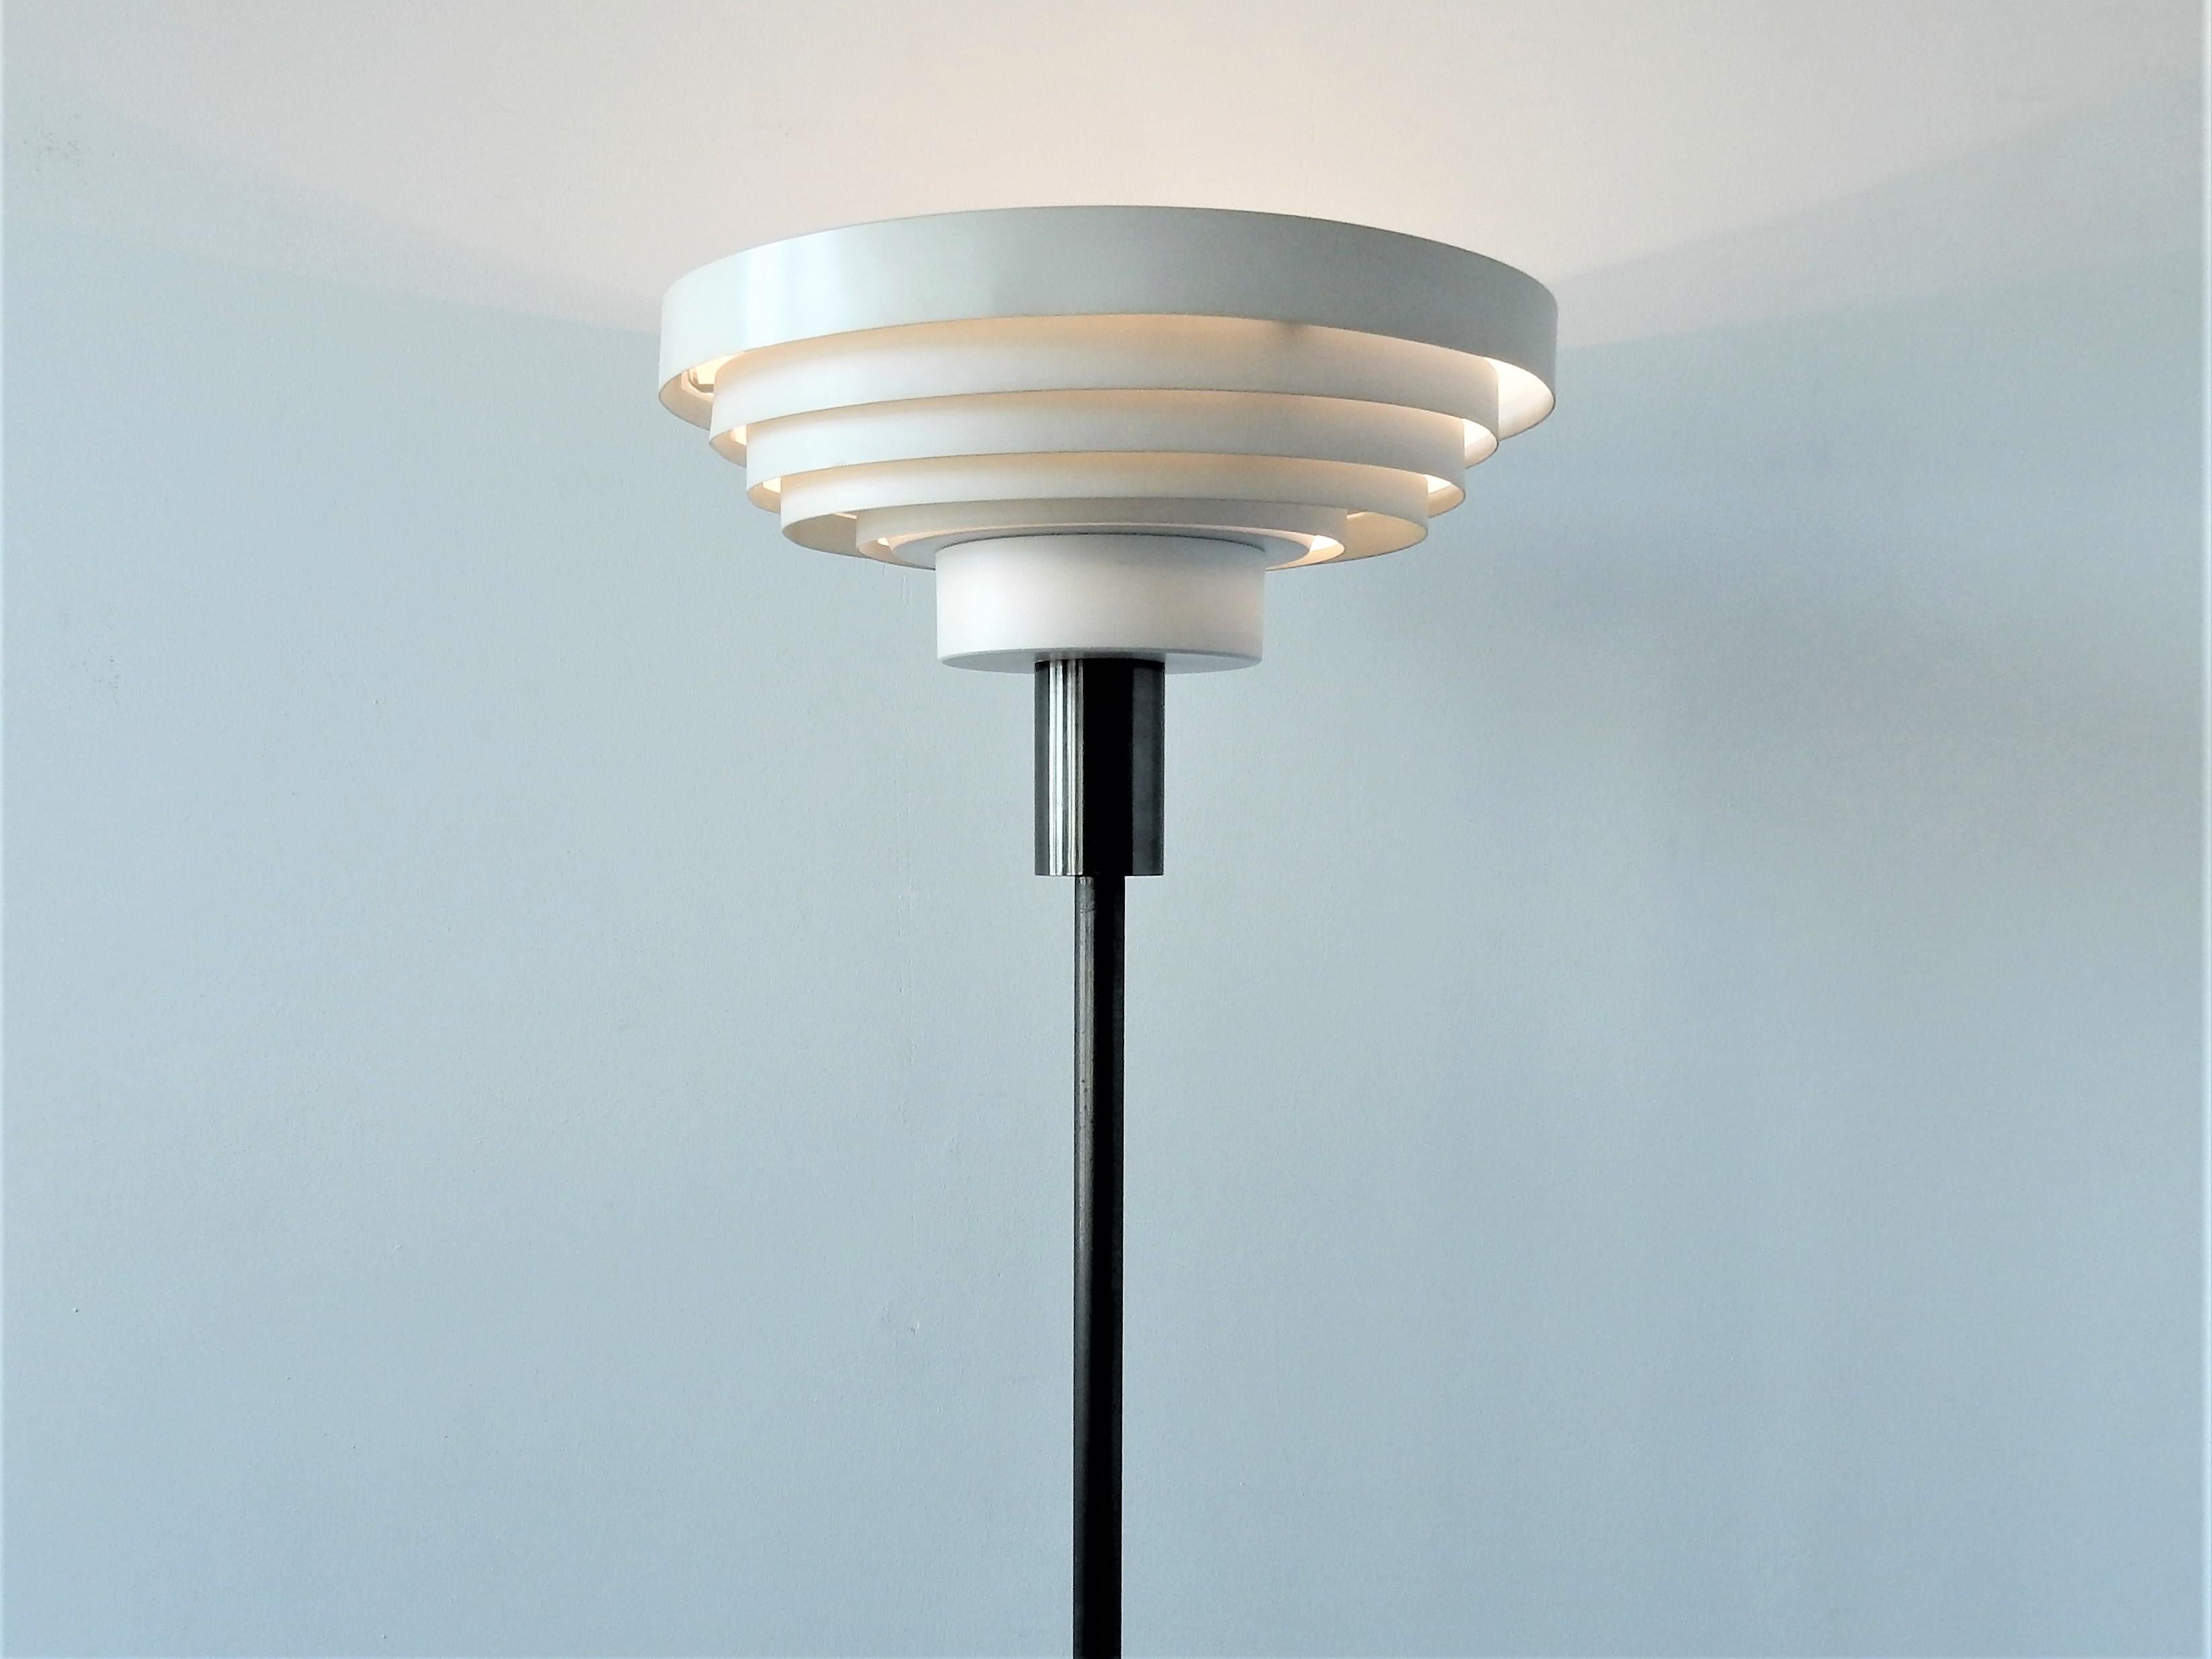 Ce lampadaire est un design haut de gamme et intemporel des années 1960. Il a une base en métal steelbronse avec des anneaux blancs comme ombre qui donne une très belle lumière directe et indirecte. La lampe est en bon état avec des signes d'âge et